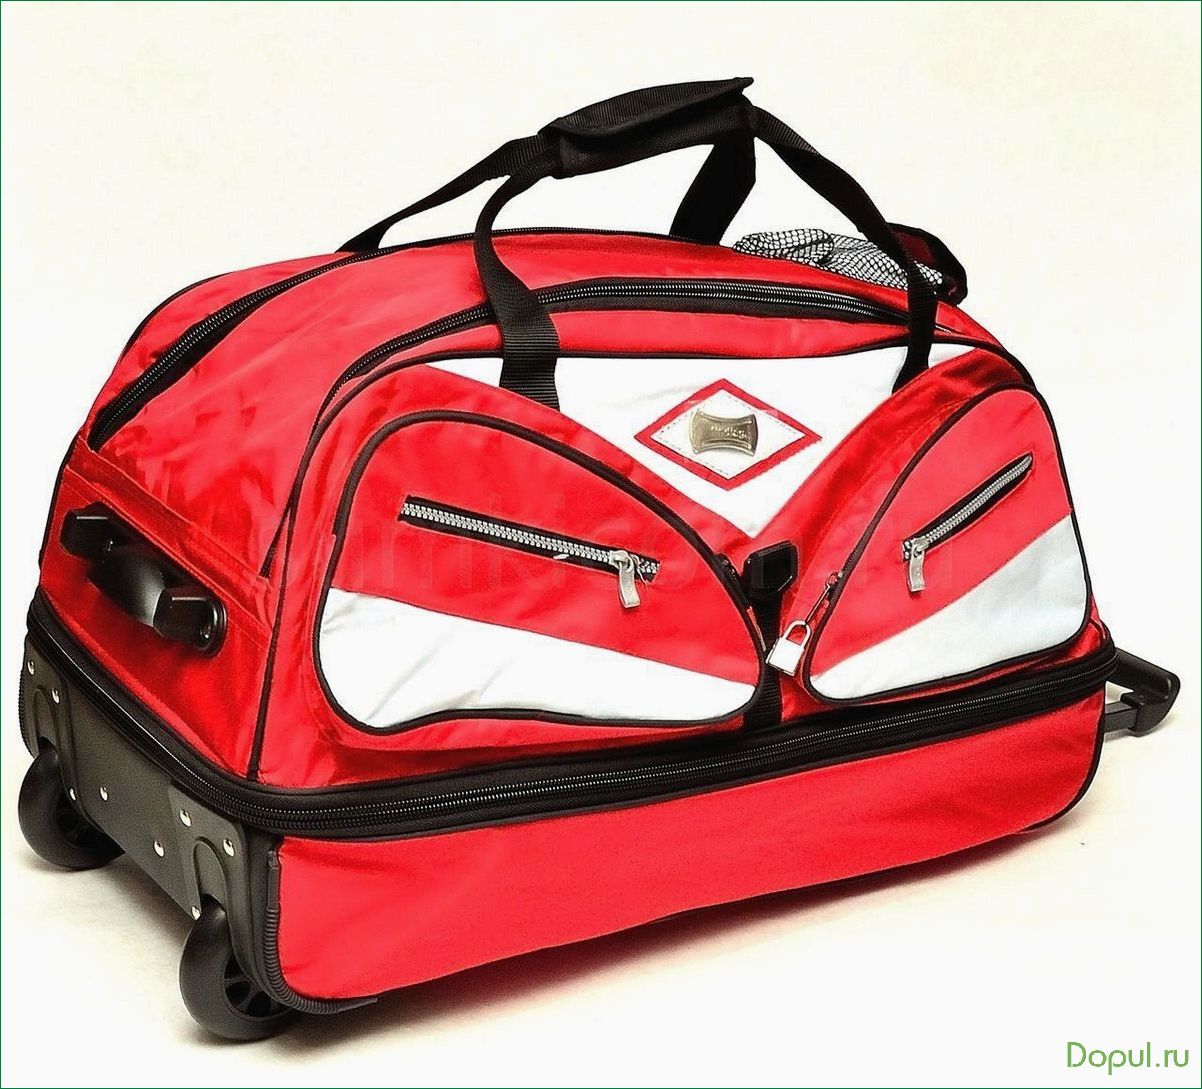 Производитель Capline представляет спортивные и дорожные сумки высокого качества